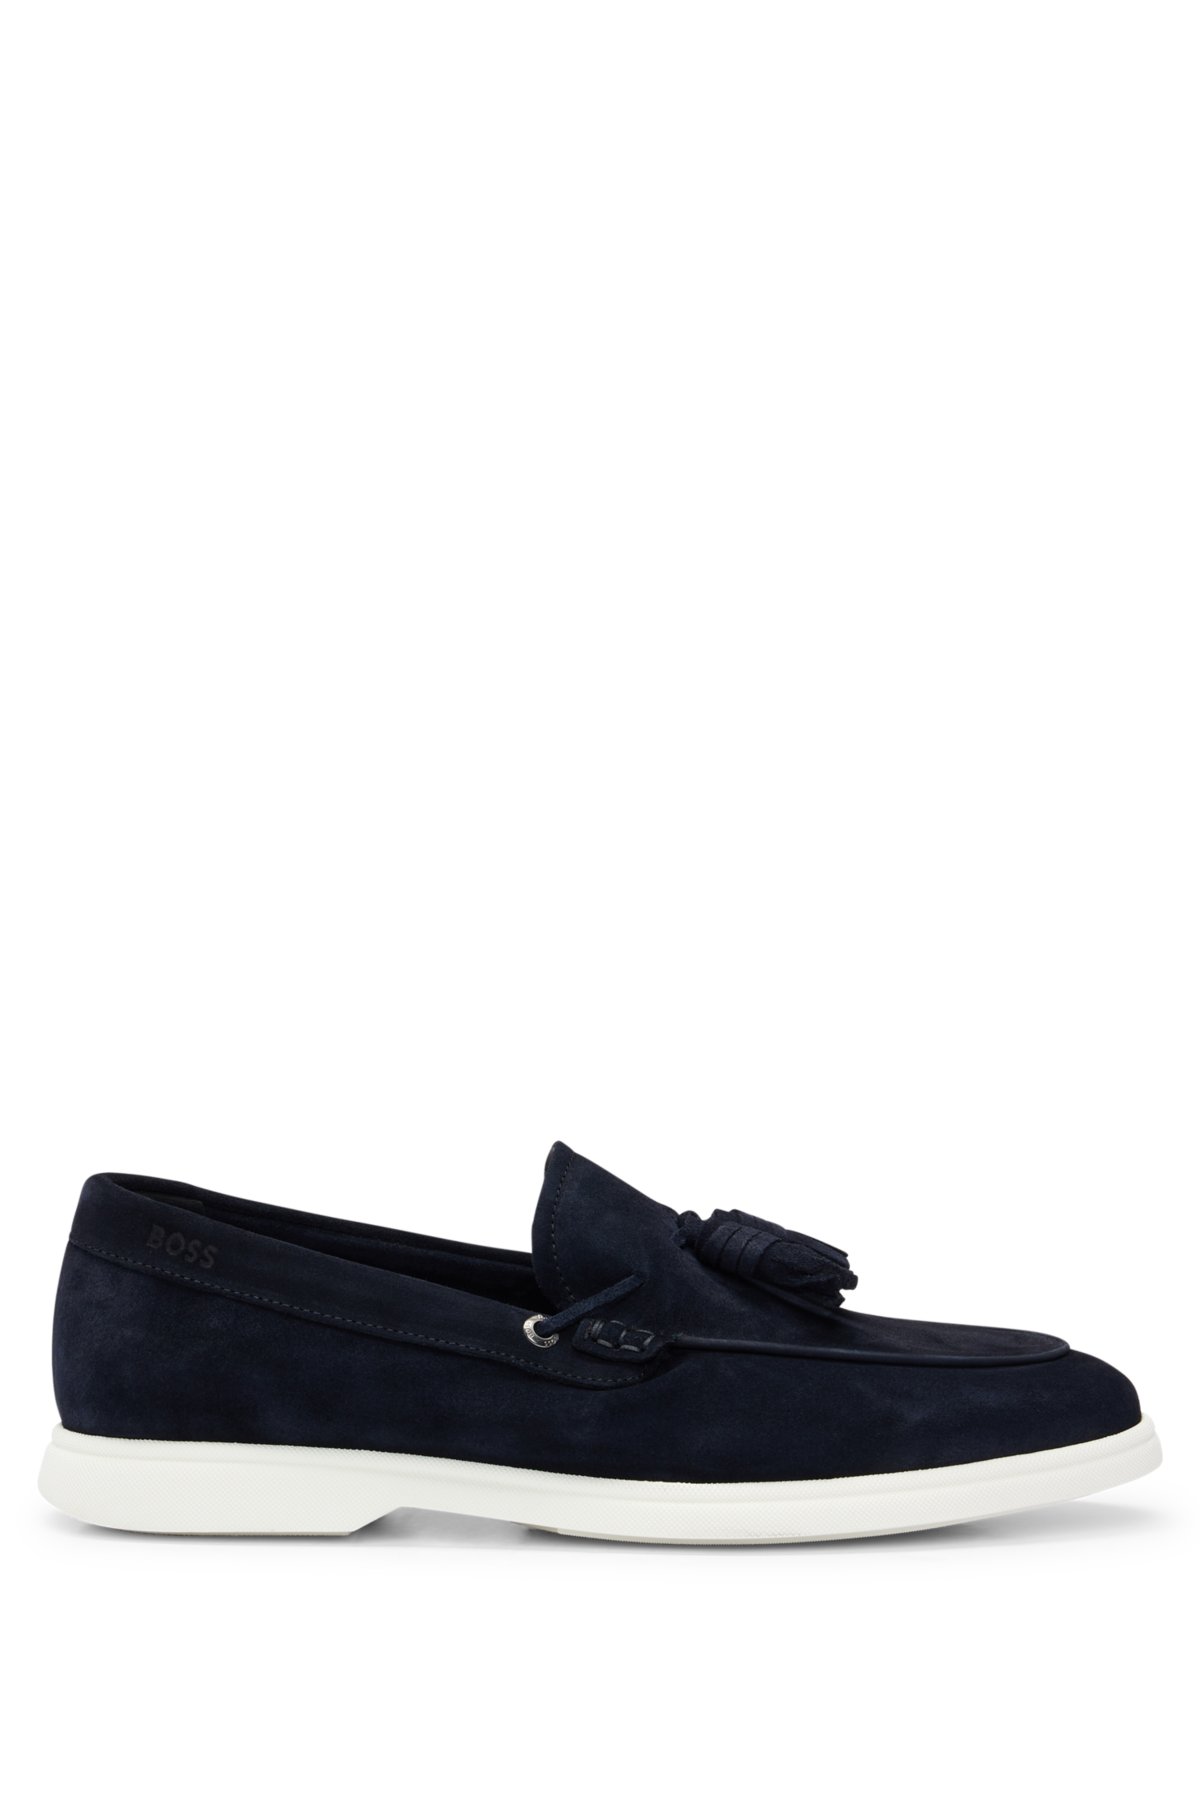 Suede slip-on loafers with tassel trim, Dark Blue